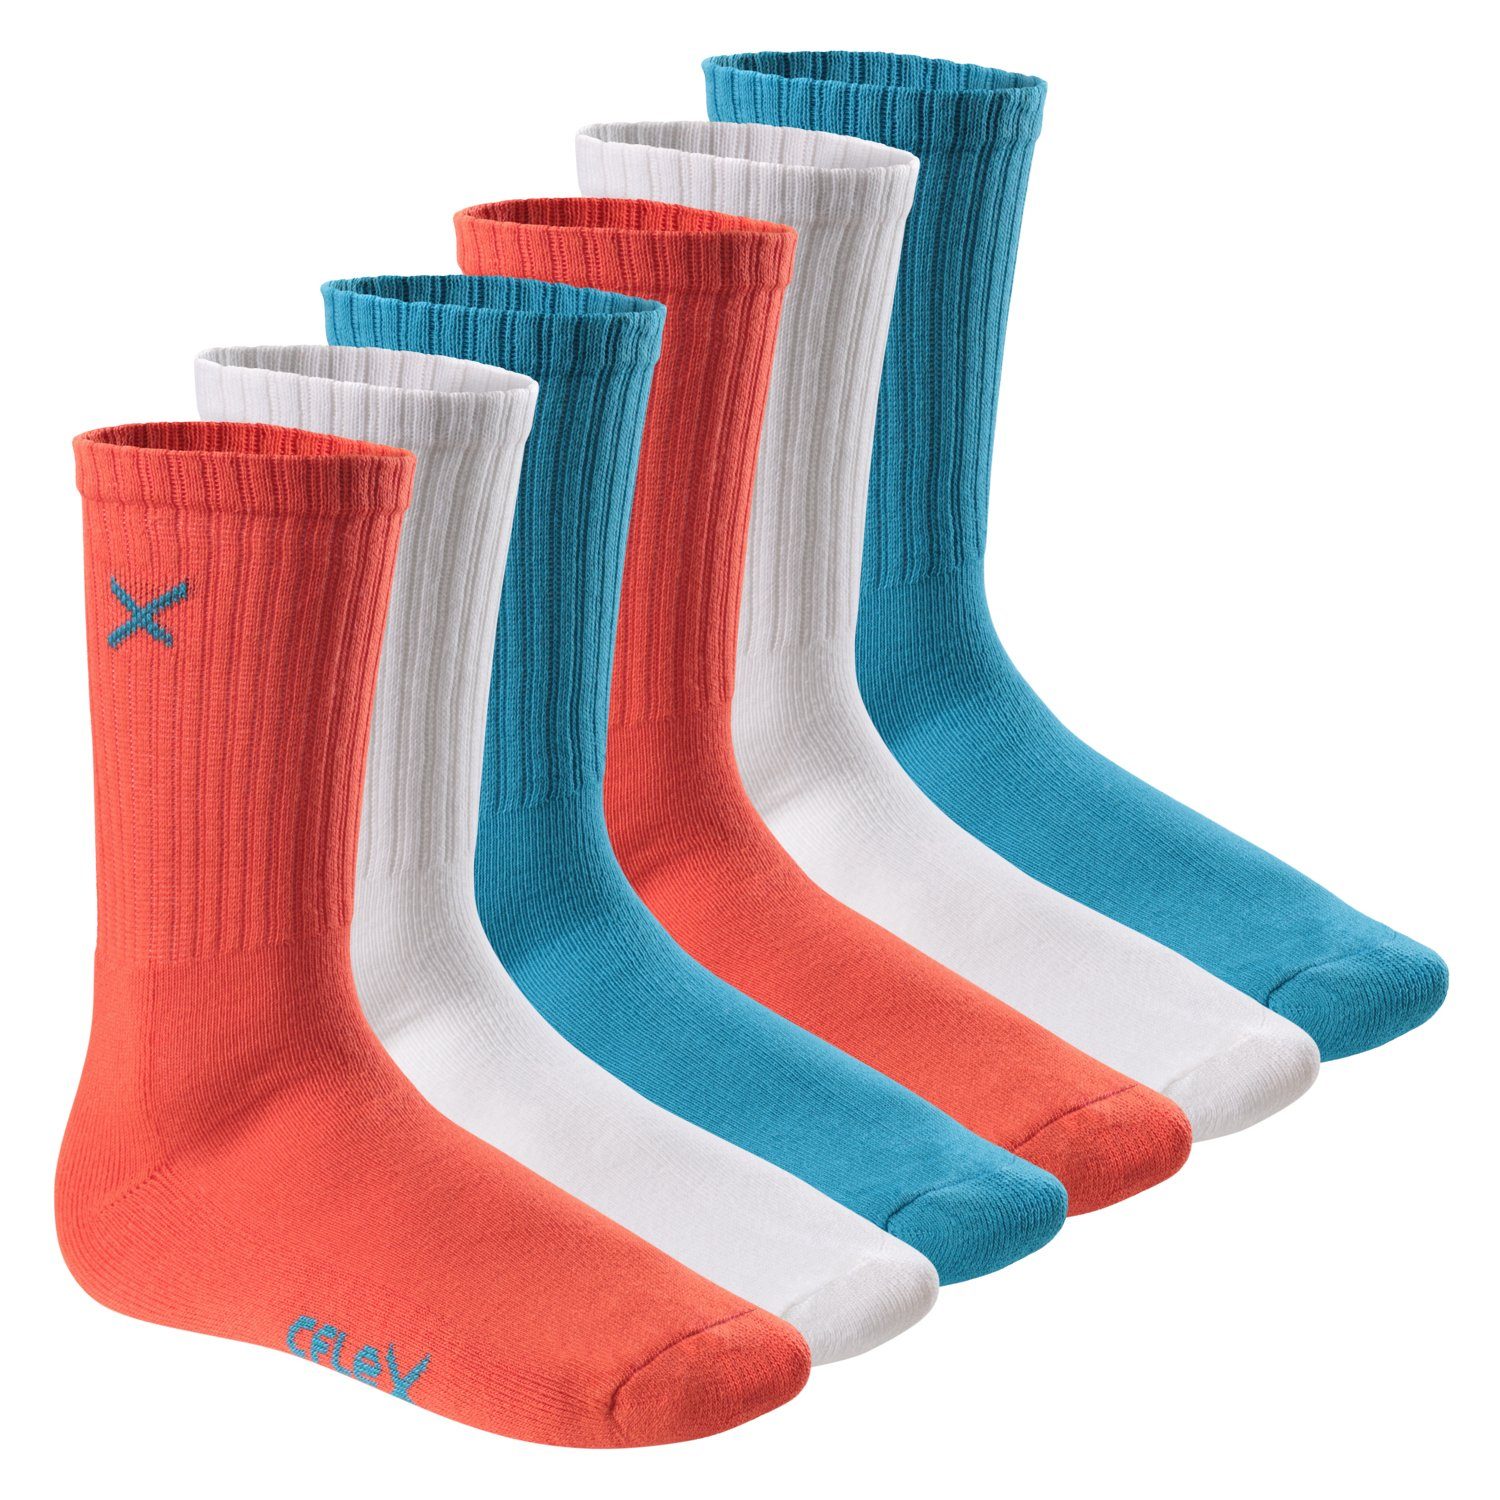 CFLEX Sportsocken Lifestyle Crew Socks (6 Paar) für Damen & Herren mit Frotteesohle